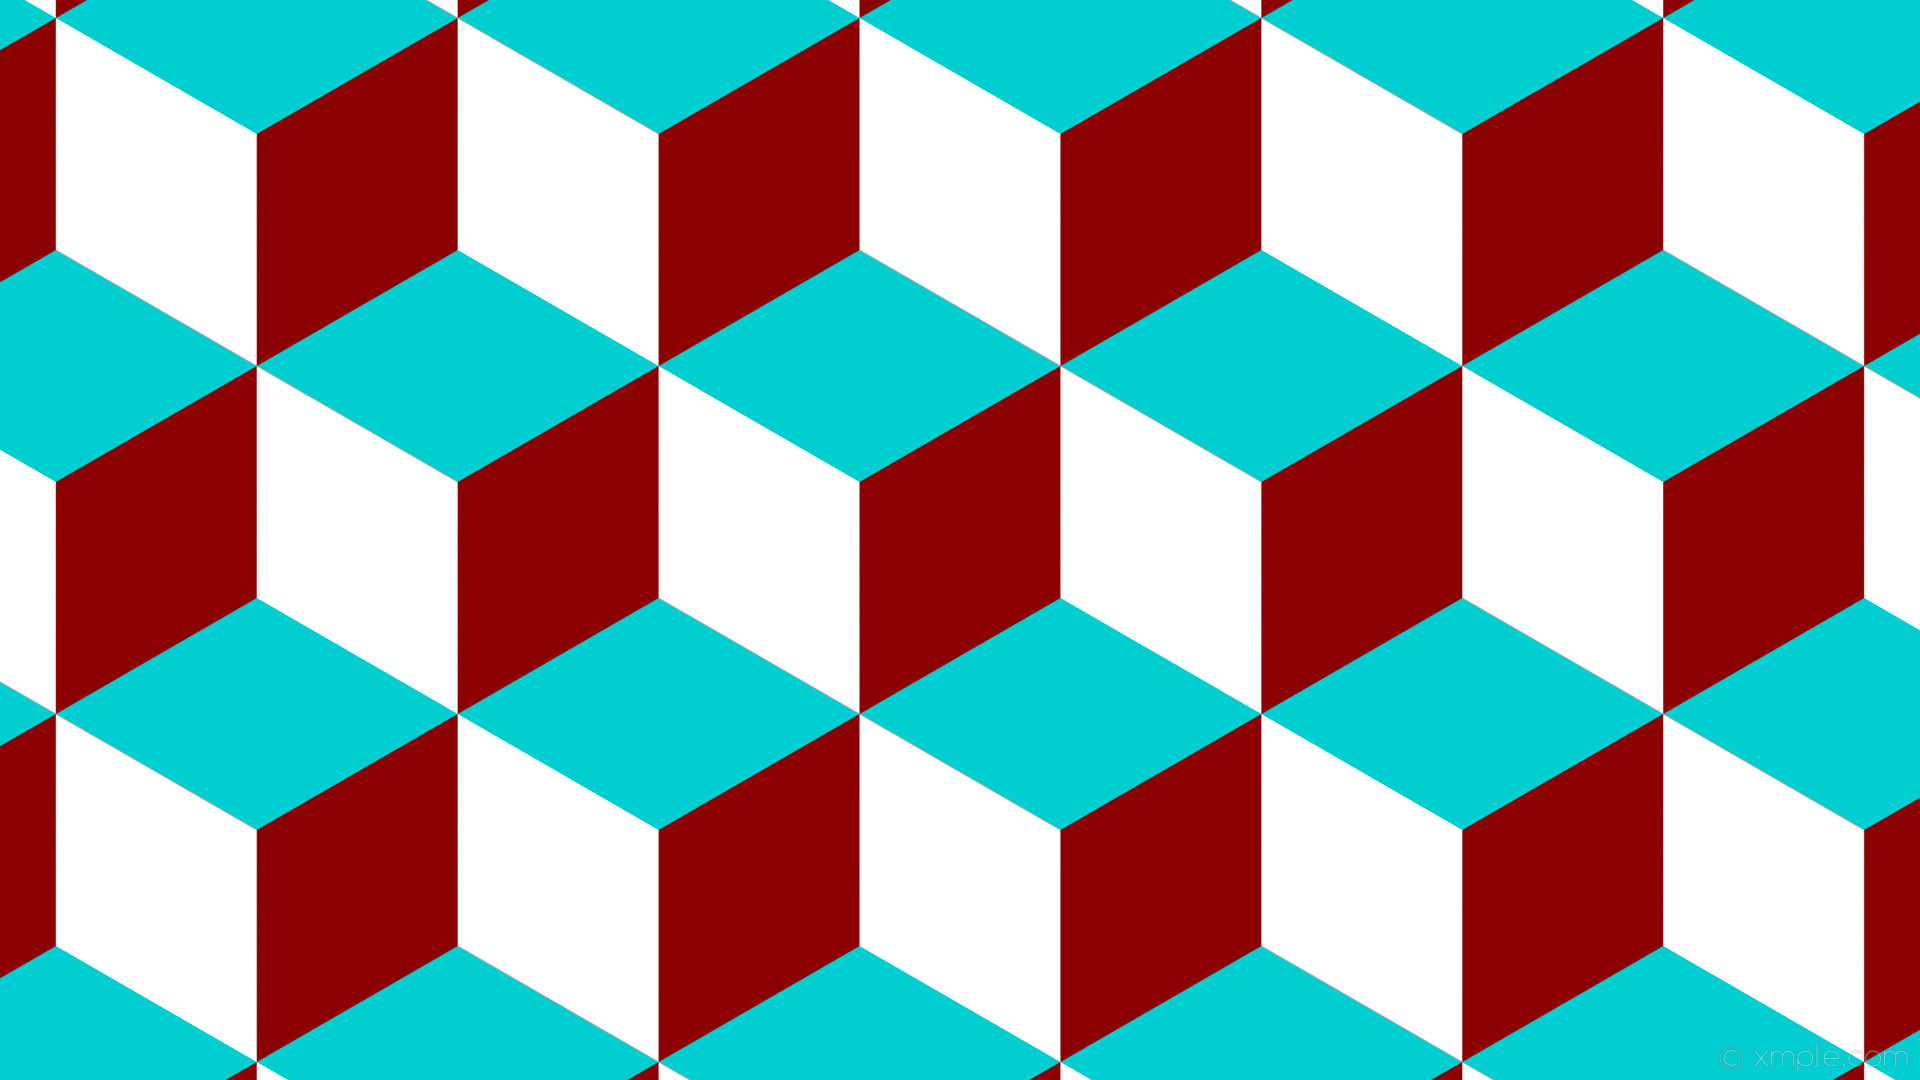 1920x1080 wallpaper red blue 3d cubes white dark red dark turquoise #8b0000 #00ced1  #ffffff